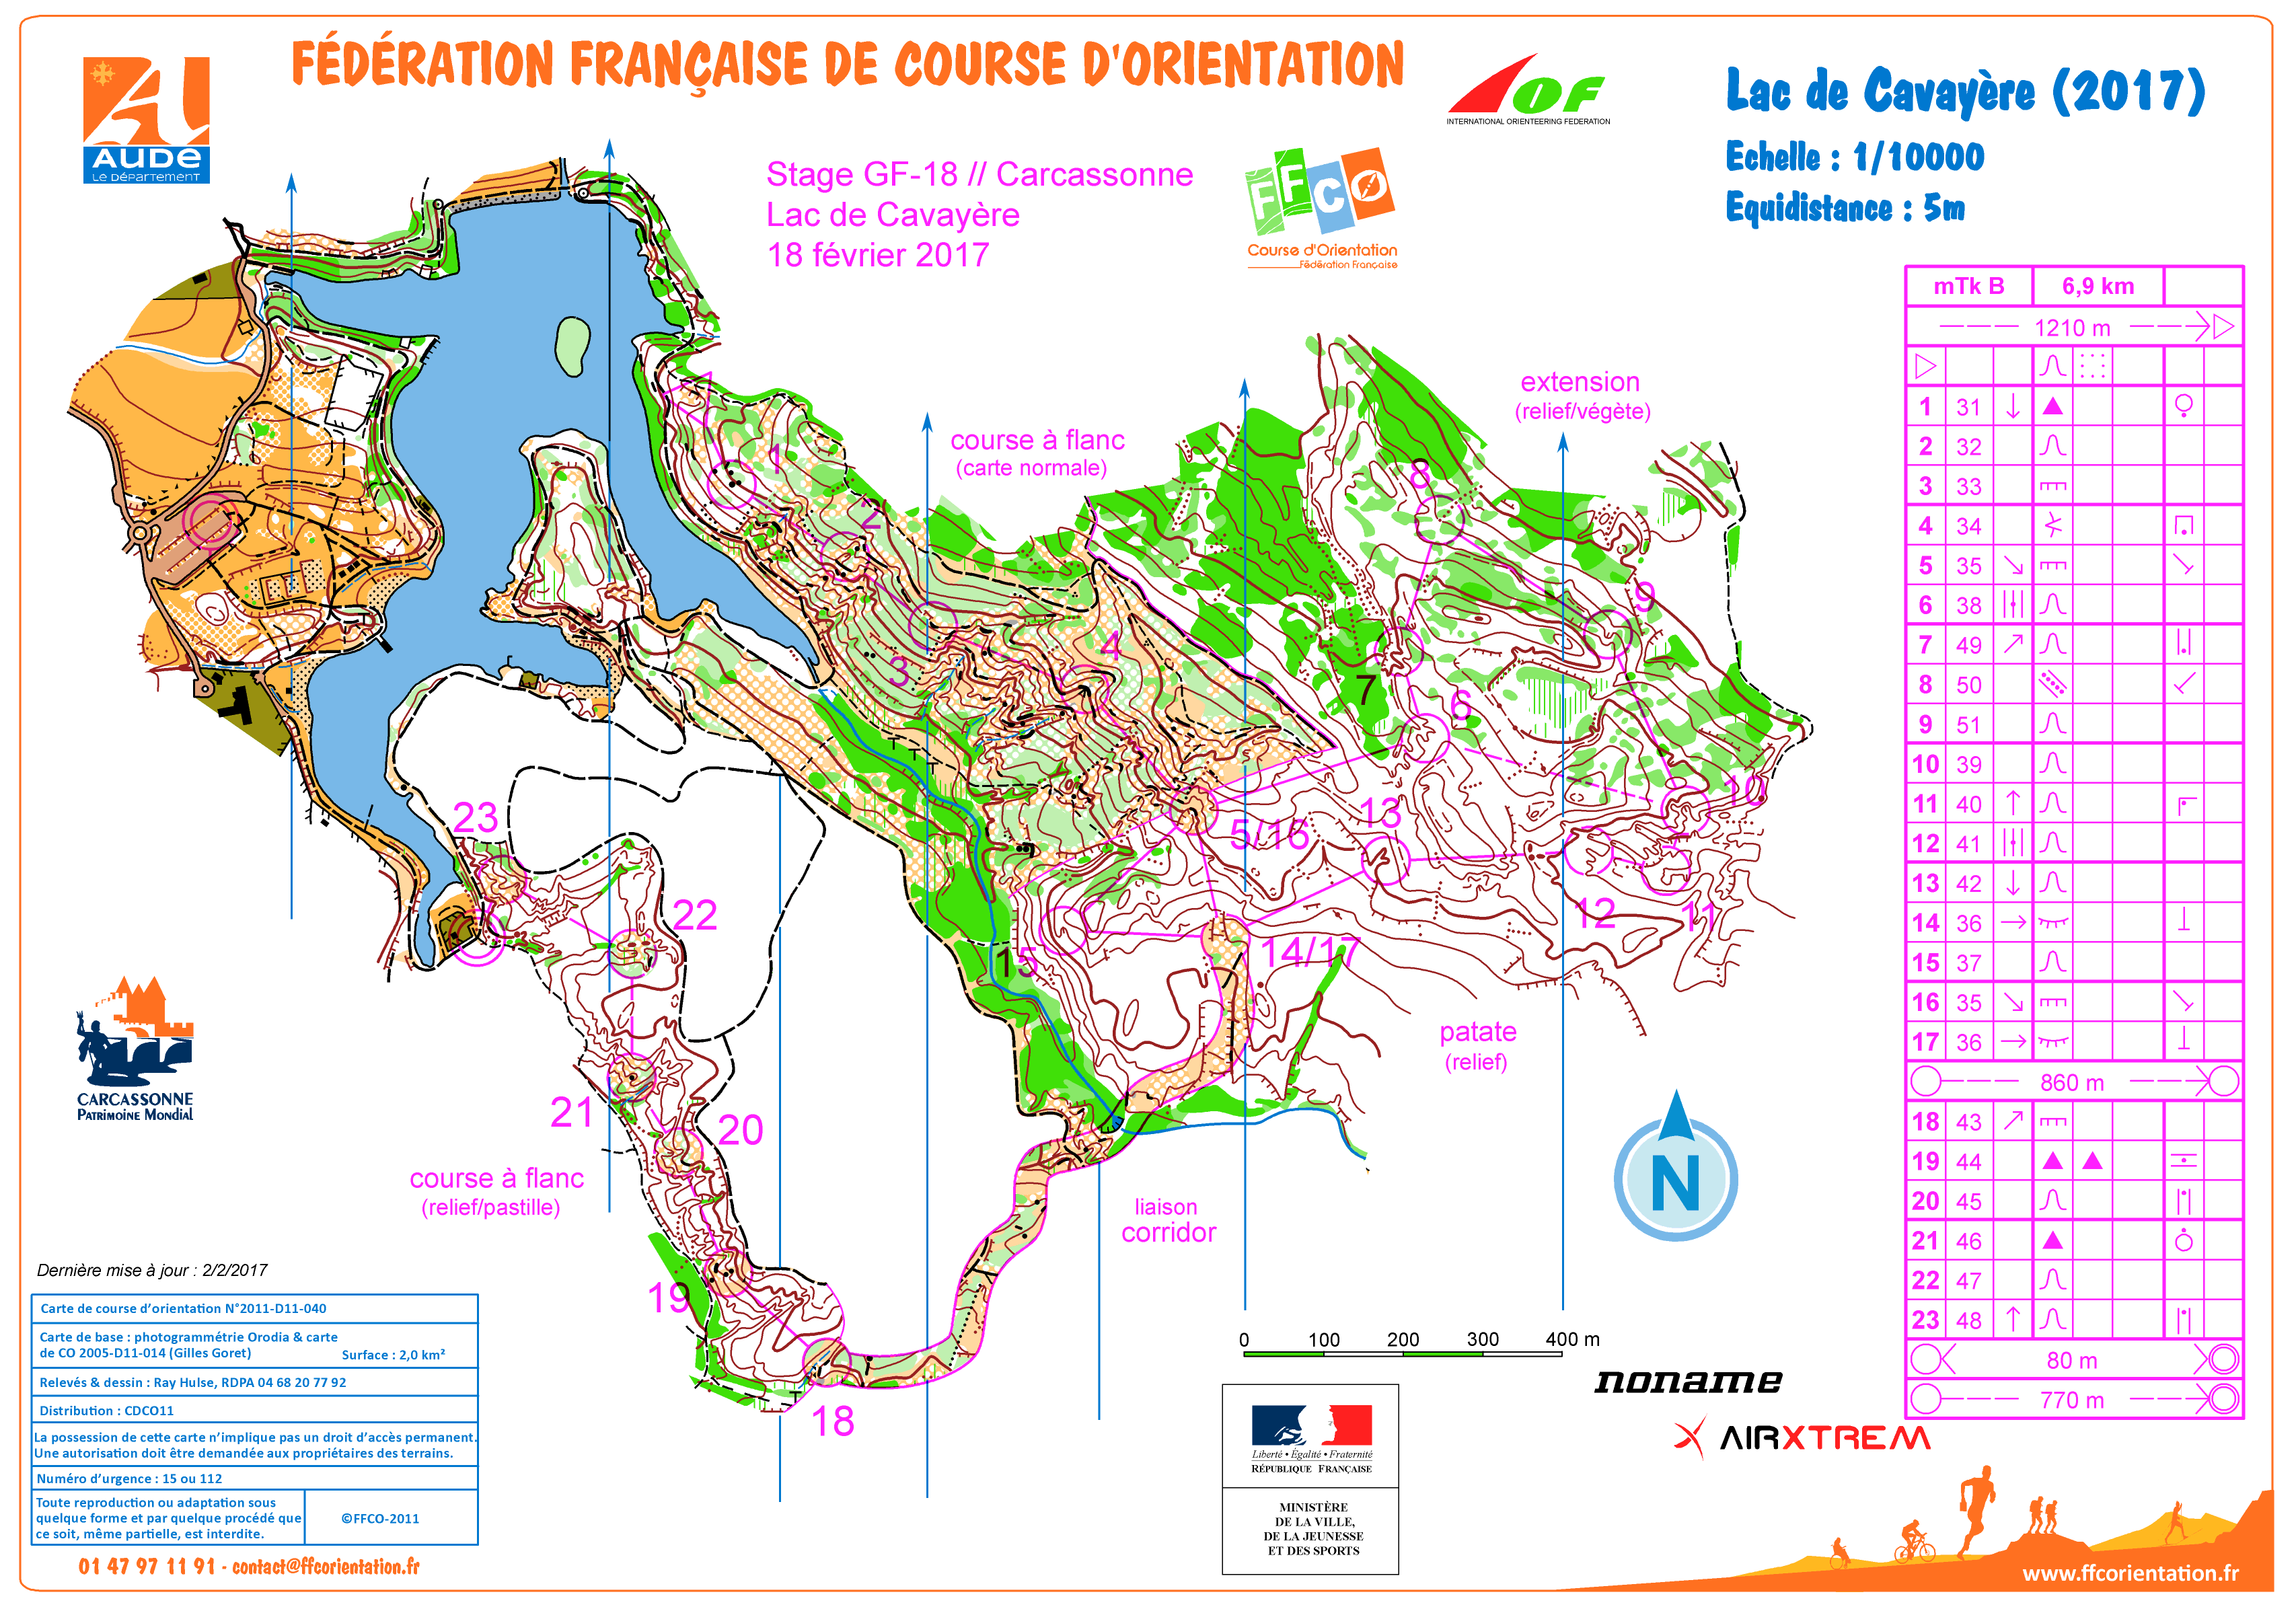 mTk Lac de Cavayère j2 stage gf-18 Carcassonne (18.02.2017)